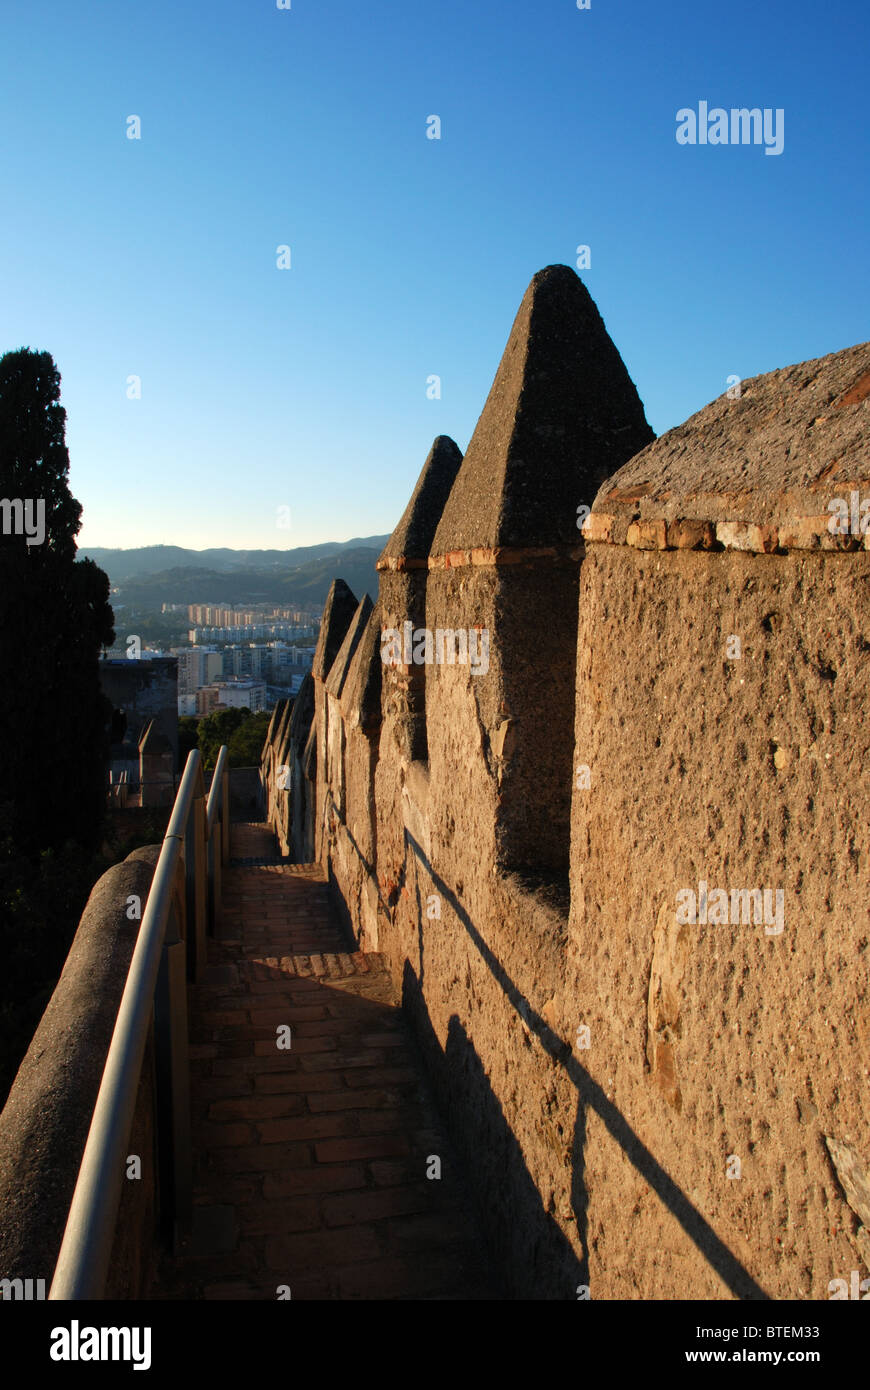 Merli, castello di Gibralfaro, Malaga, Costa del Sol, provincia di Malaga, Andalusia, Spagna, Europa occidentale. Foto Stock